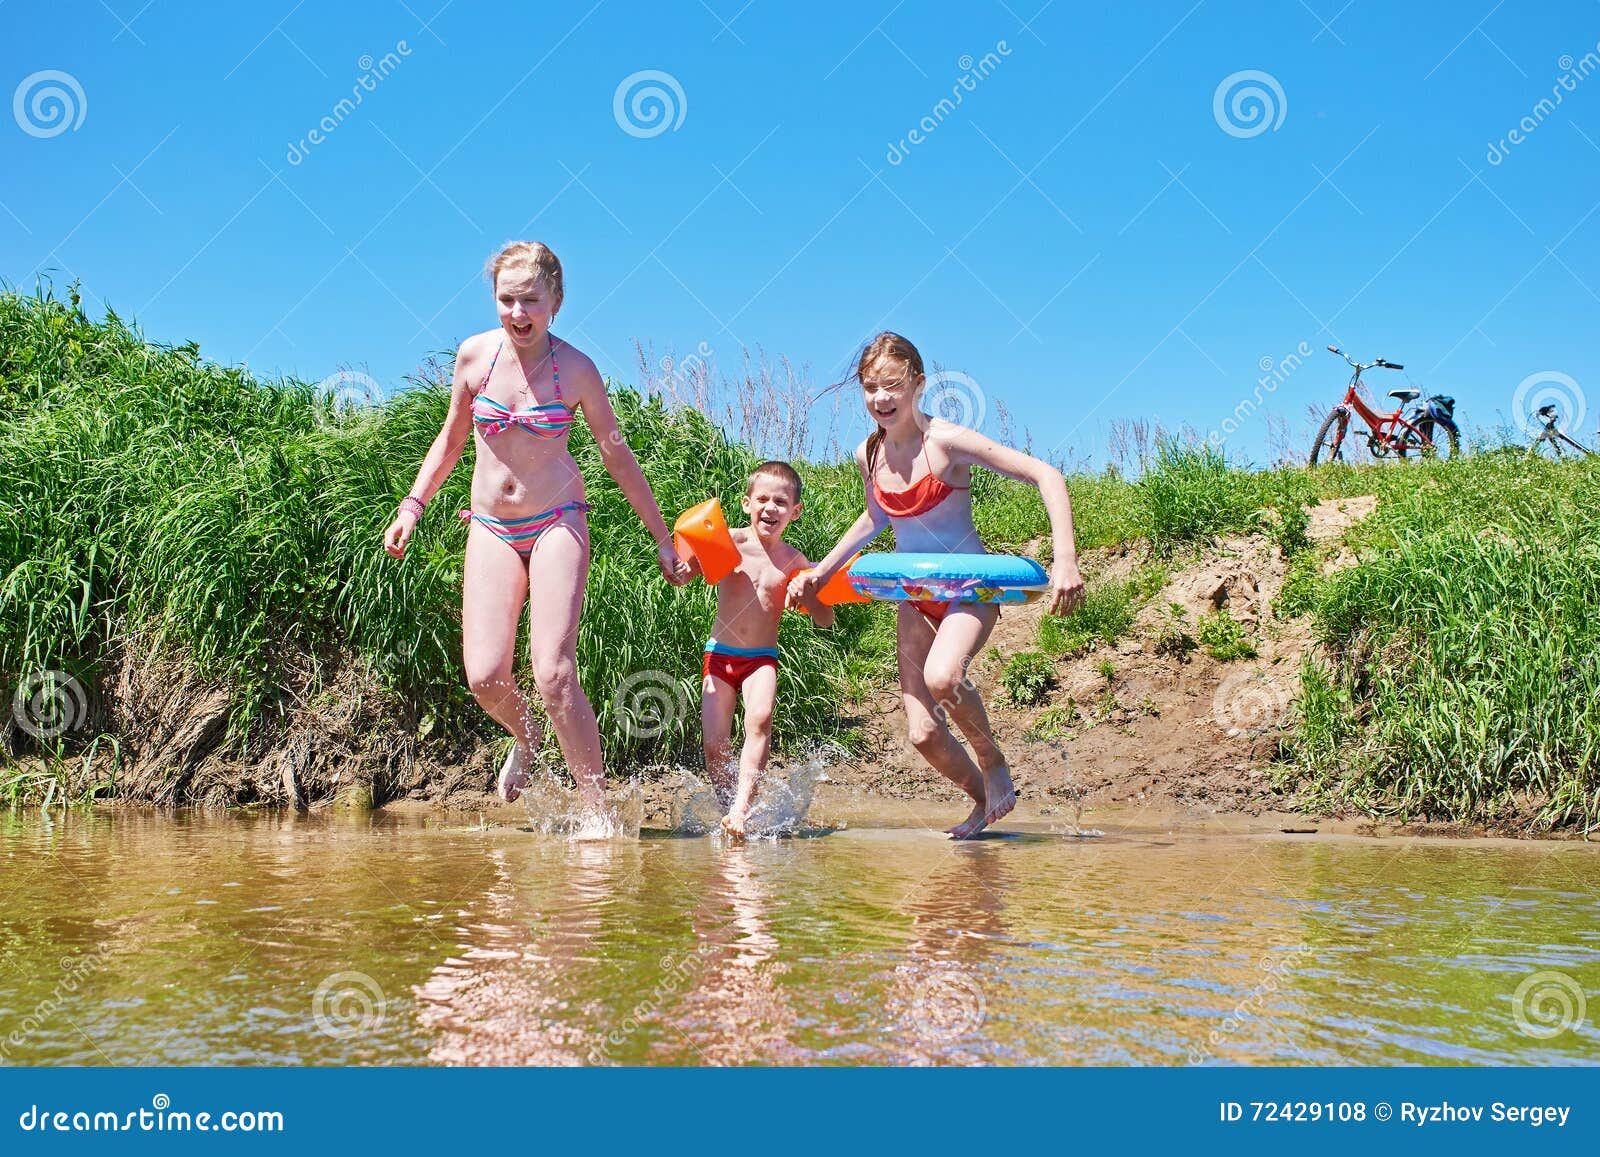 Заставила купаться. Лето дети купаются в реке. Река для детей. Дети на речке в деревне. Загораем и купаемся на даче.